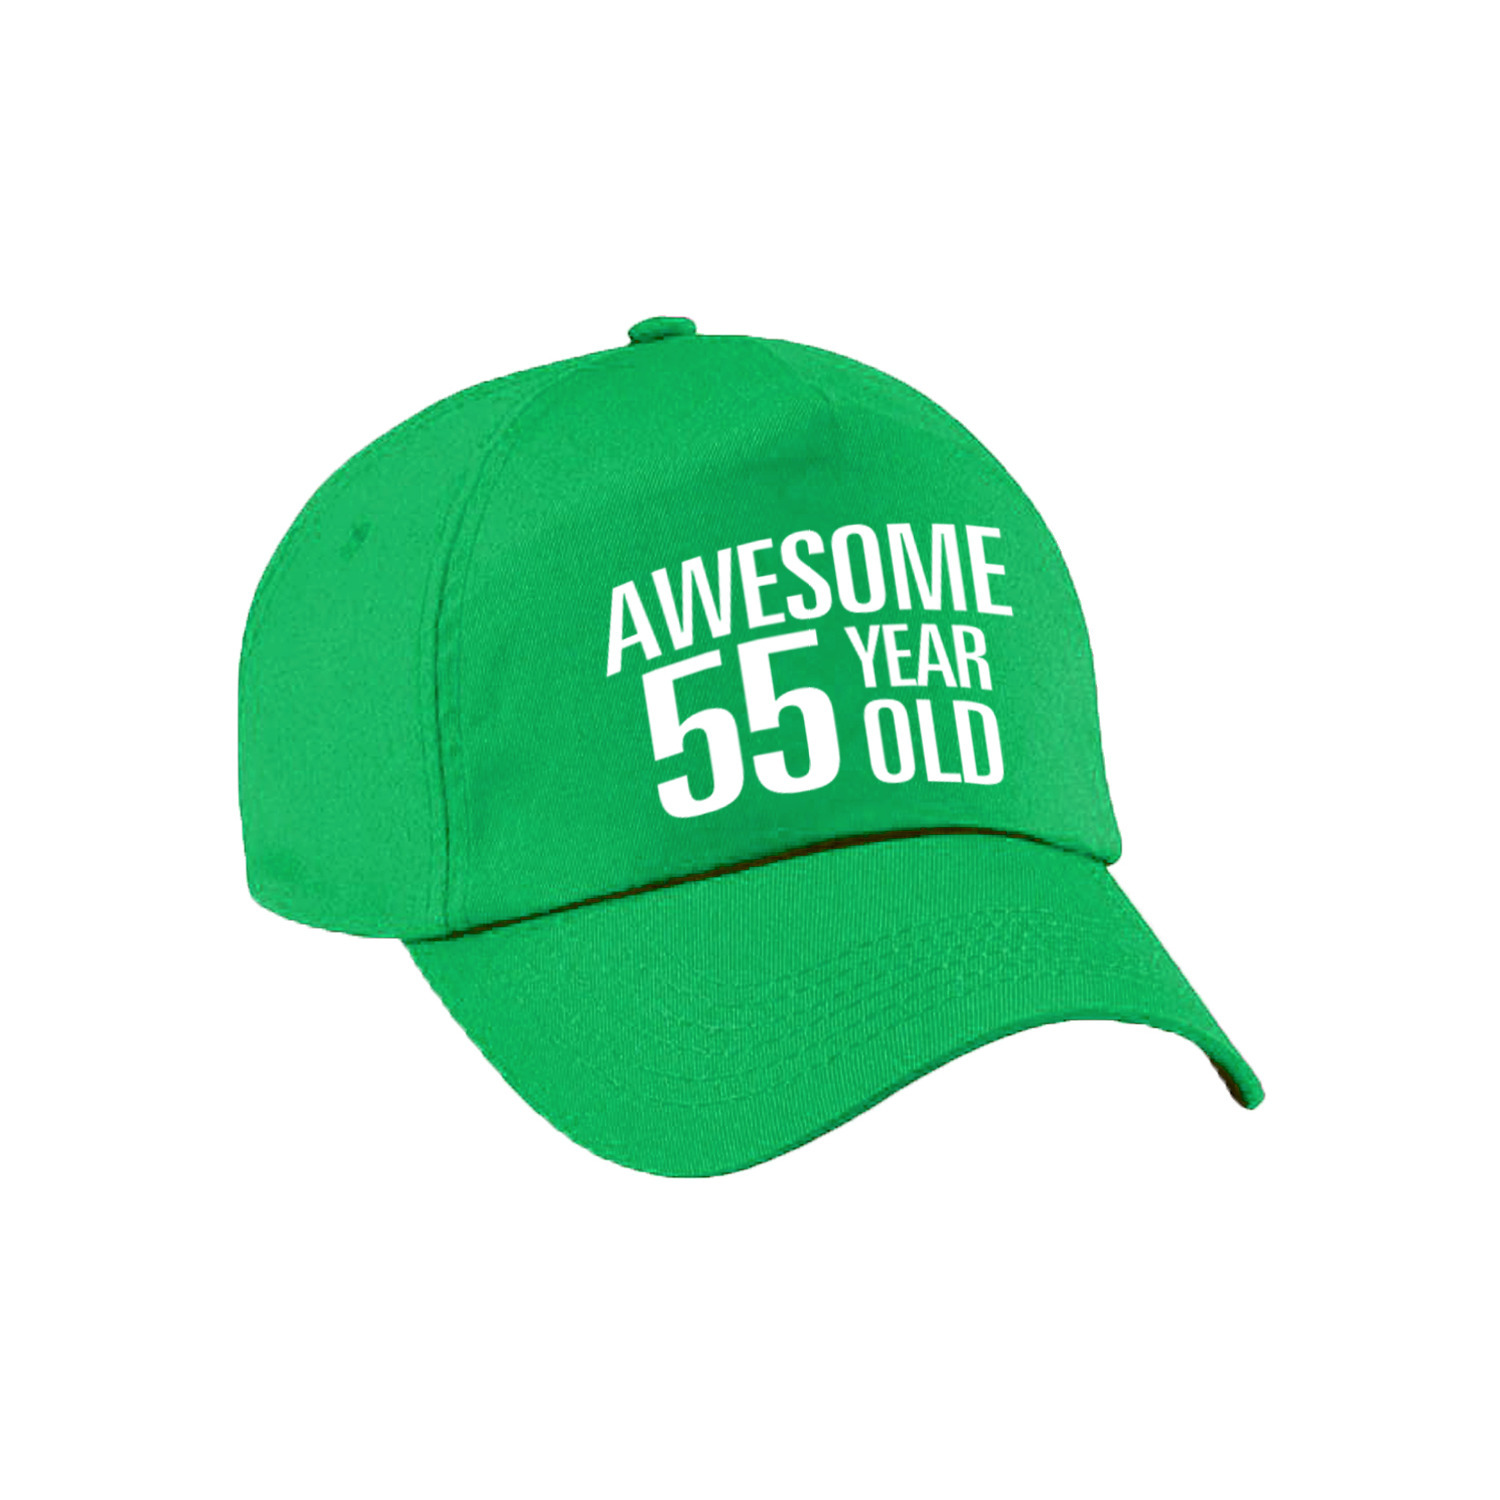 Awesome 55 year old verjaardag pet - cap groen voor dames en heren